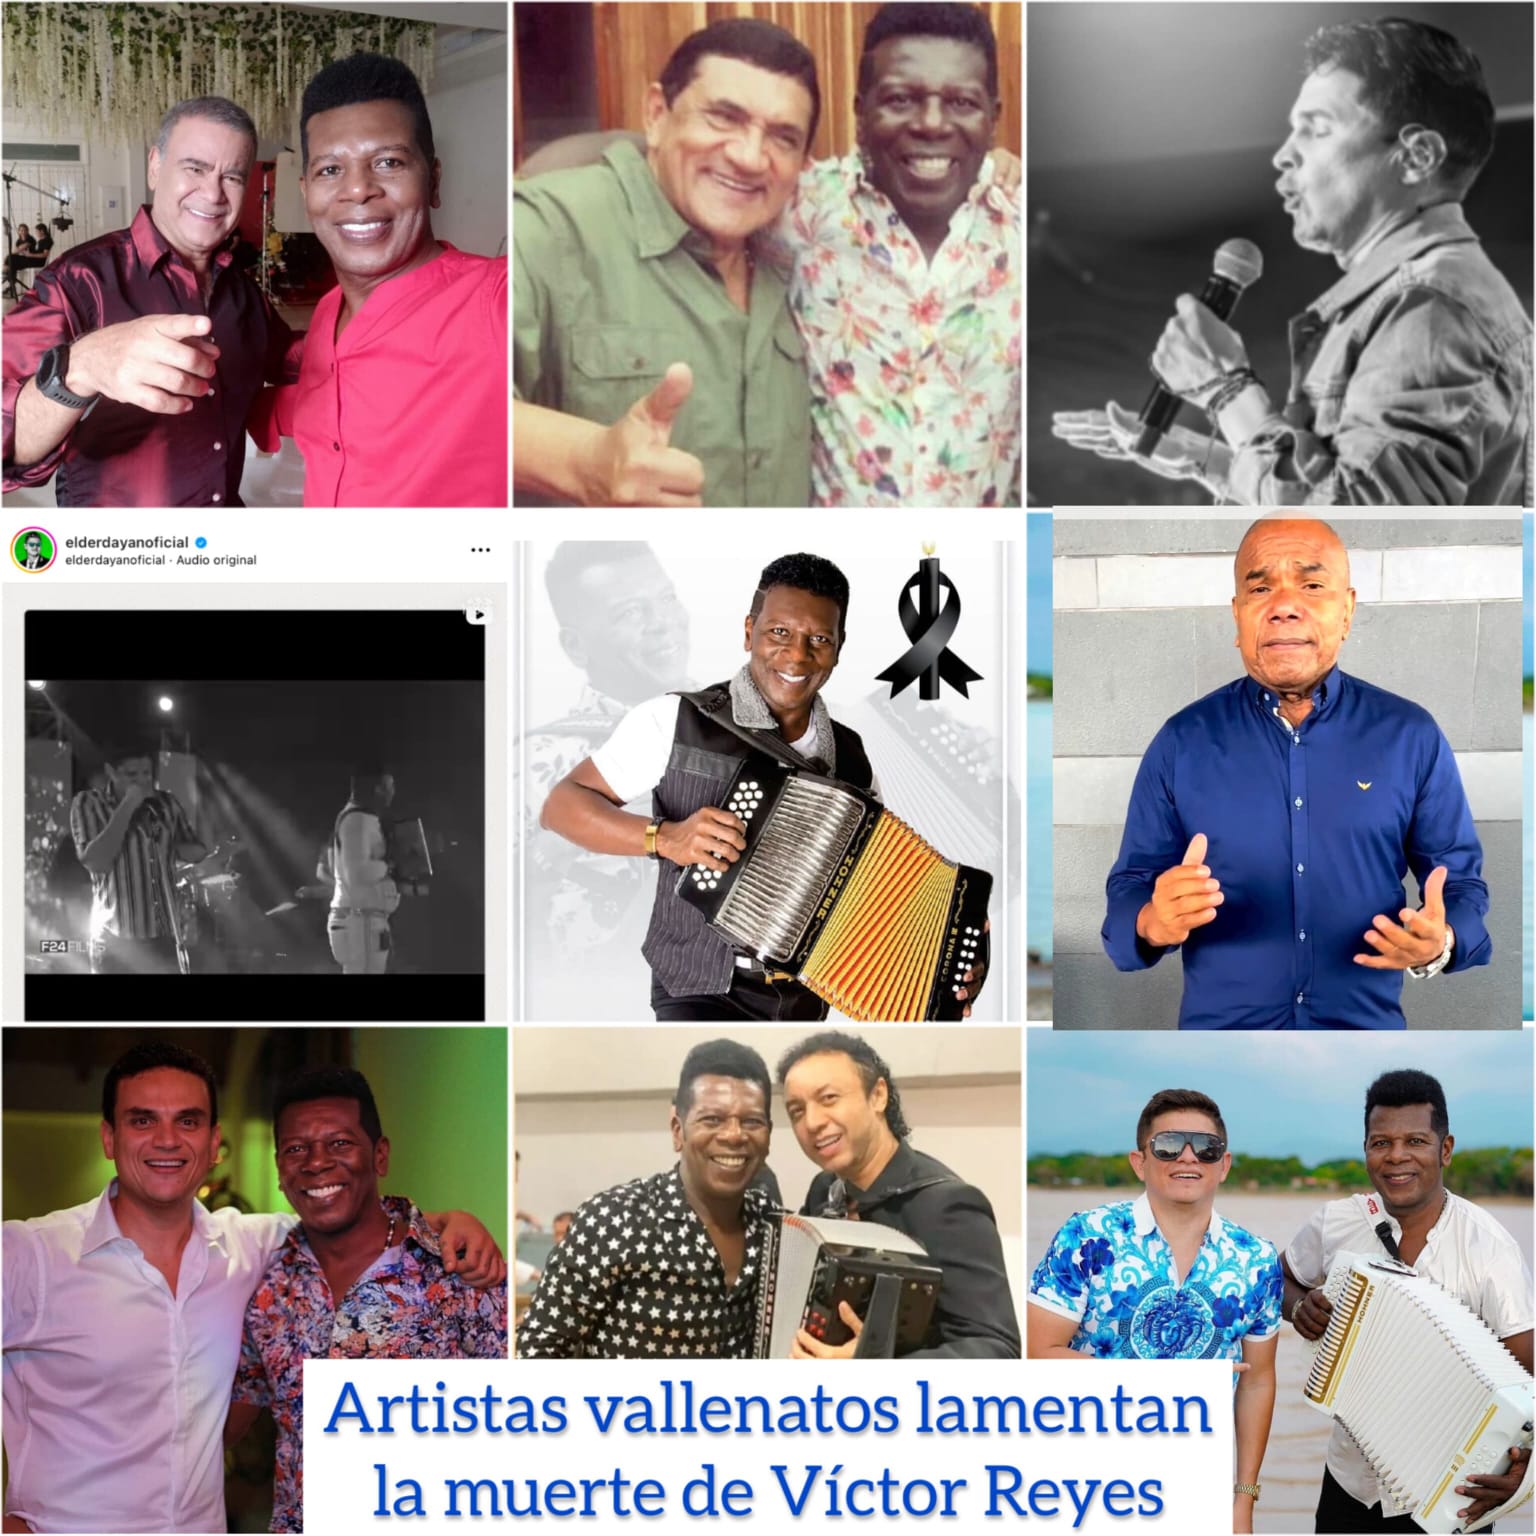 Los artistas vallenatos lamentan la muerte del acordeonero Víctor Rey Reyes a través de sus redes sociales y comunicados de prensa.